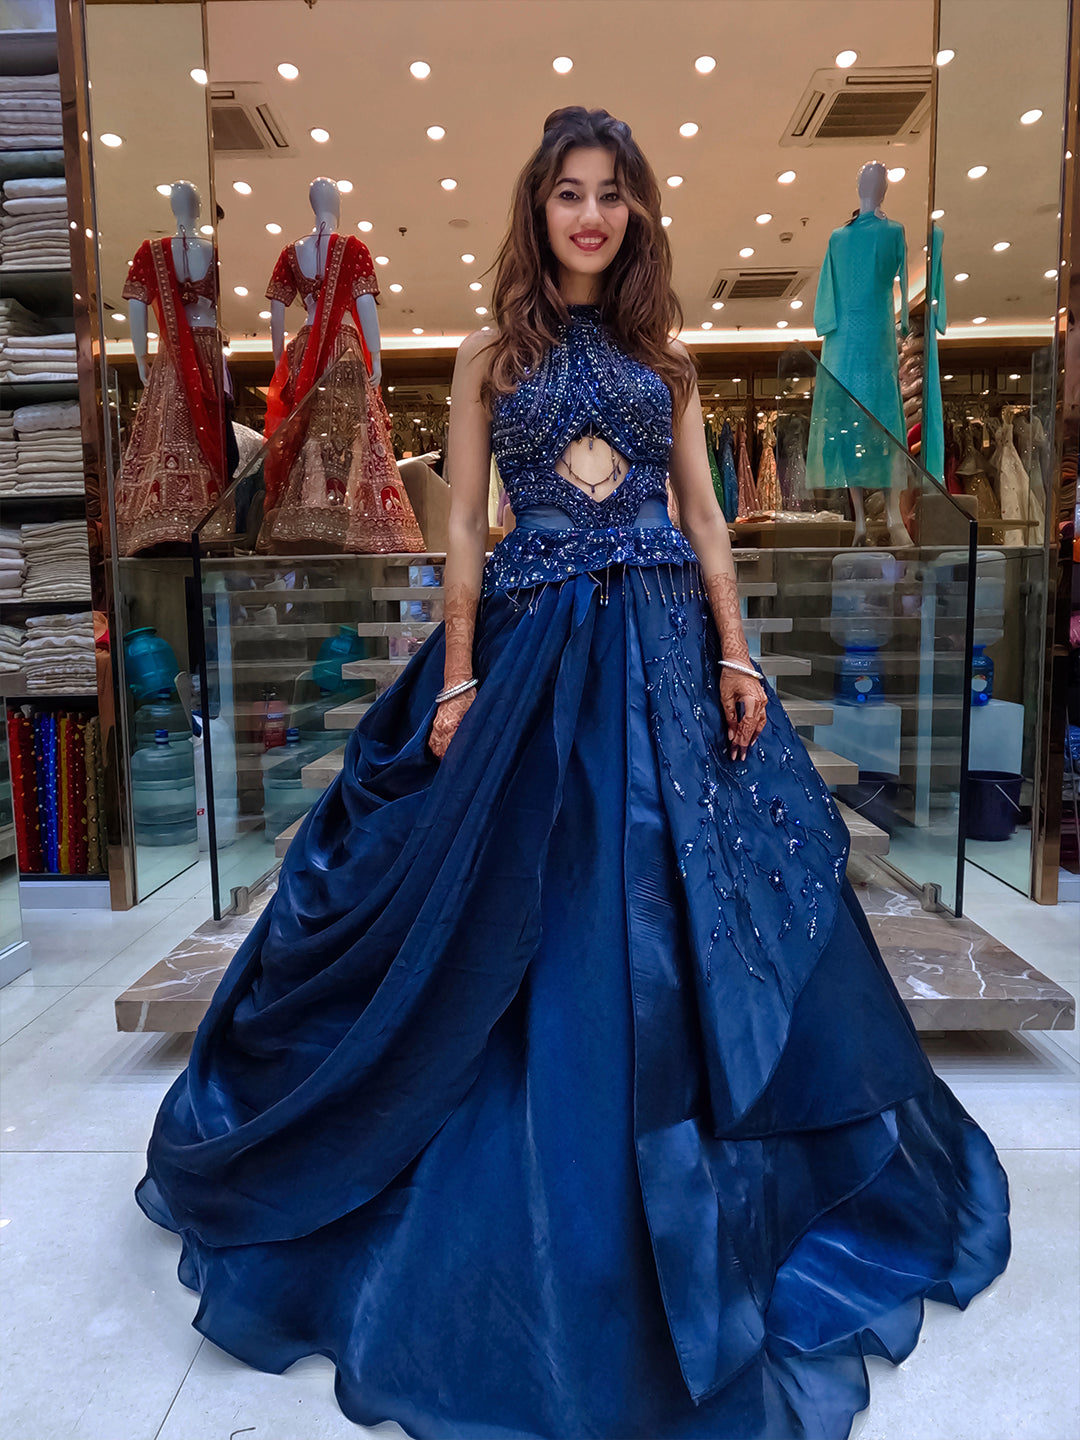 Eloise Blue Silk Wedding Dress | Strapless Sweetheart Wedding Dress